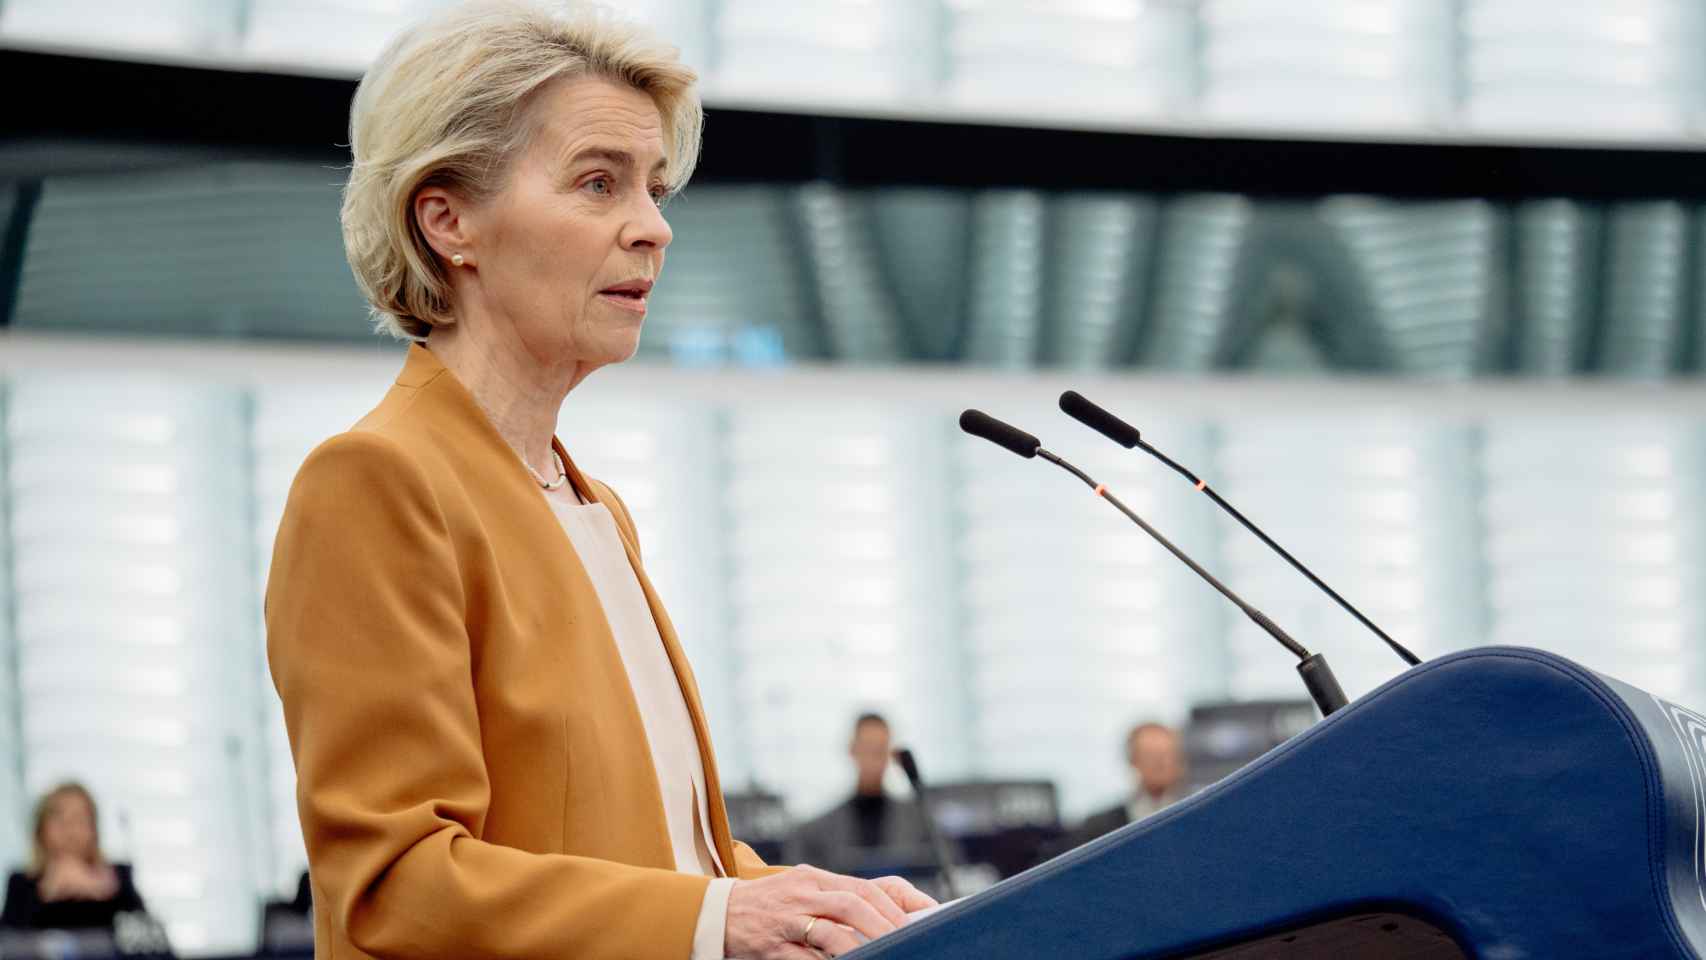 La presidenta de la Comisión, Ursula von der Leyen, durante un debate este miércoles en la Eurocámara